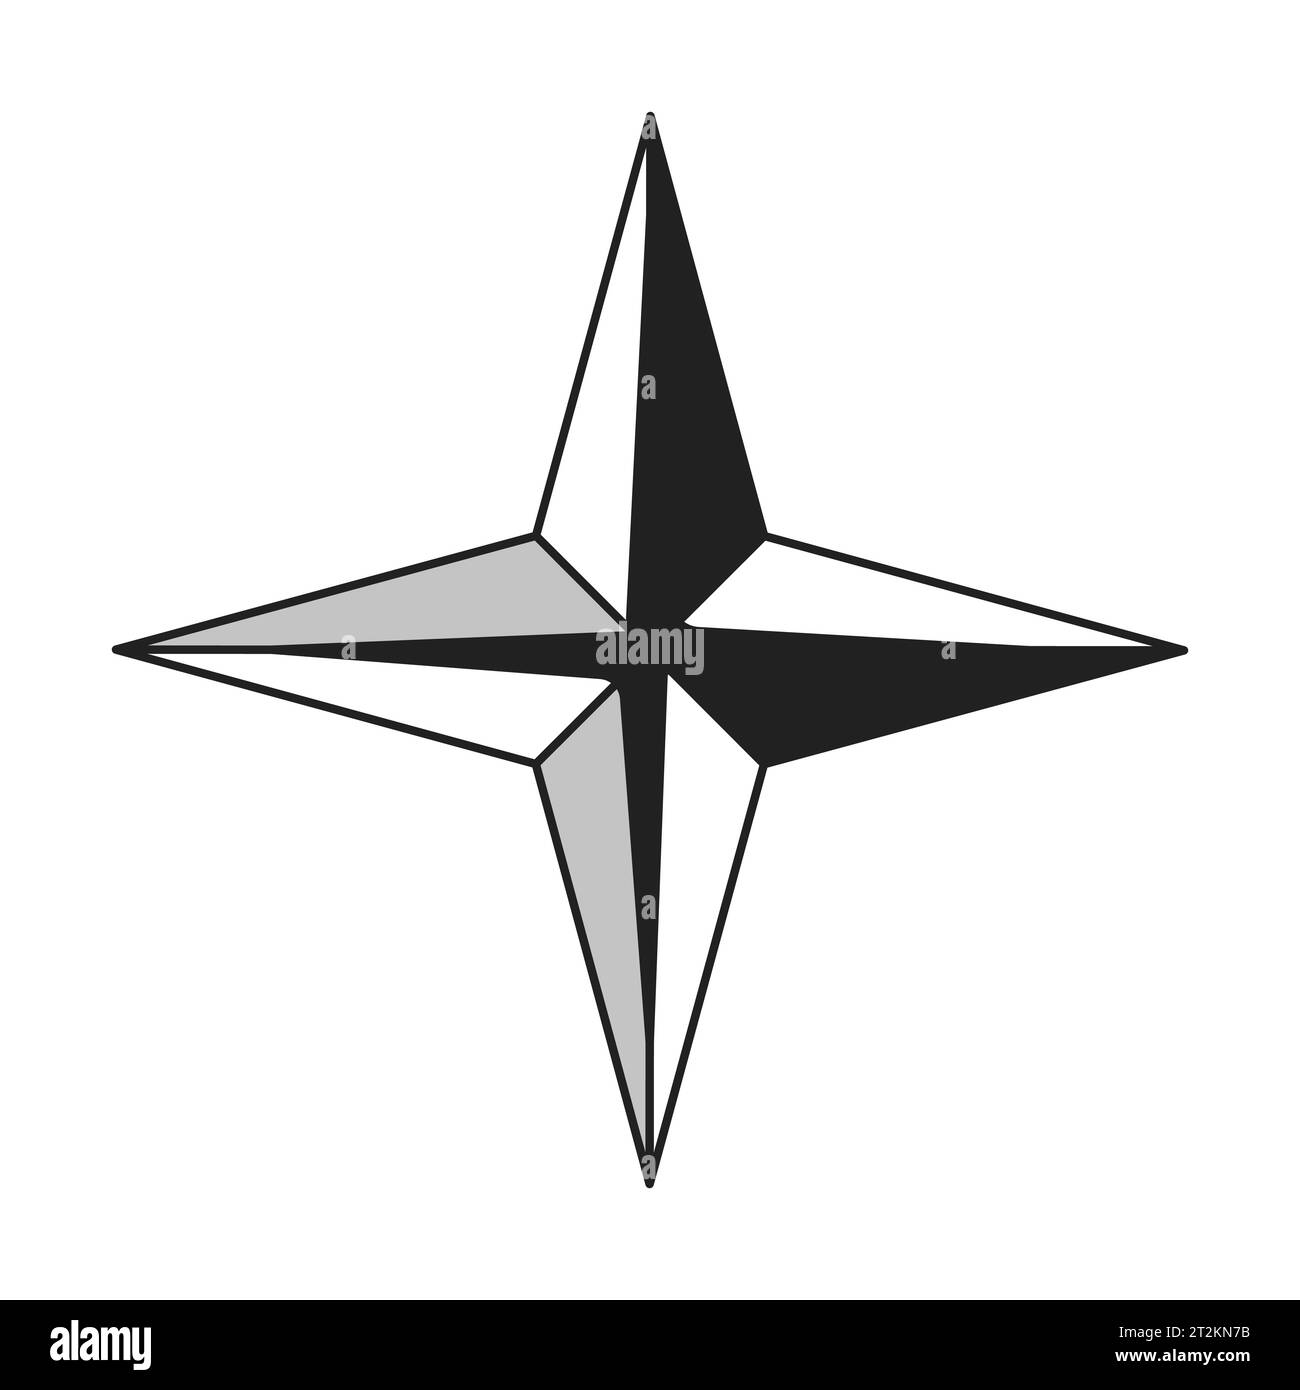 Vier spitze Sterne funkeln schwarz-weiß 2D-Zeichentrickobjekt Stock Vektor